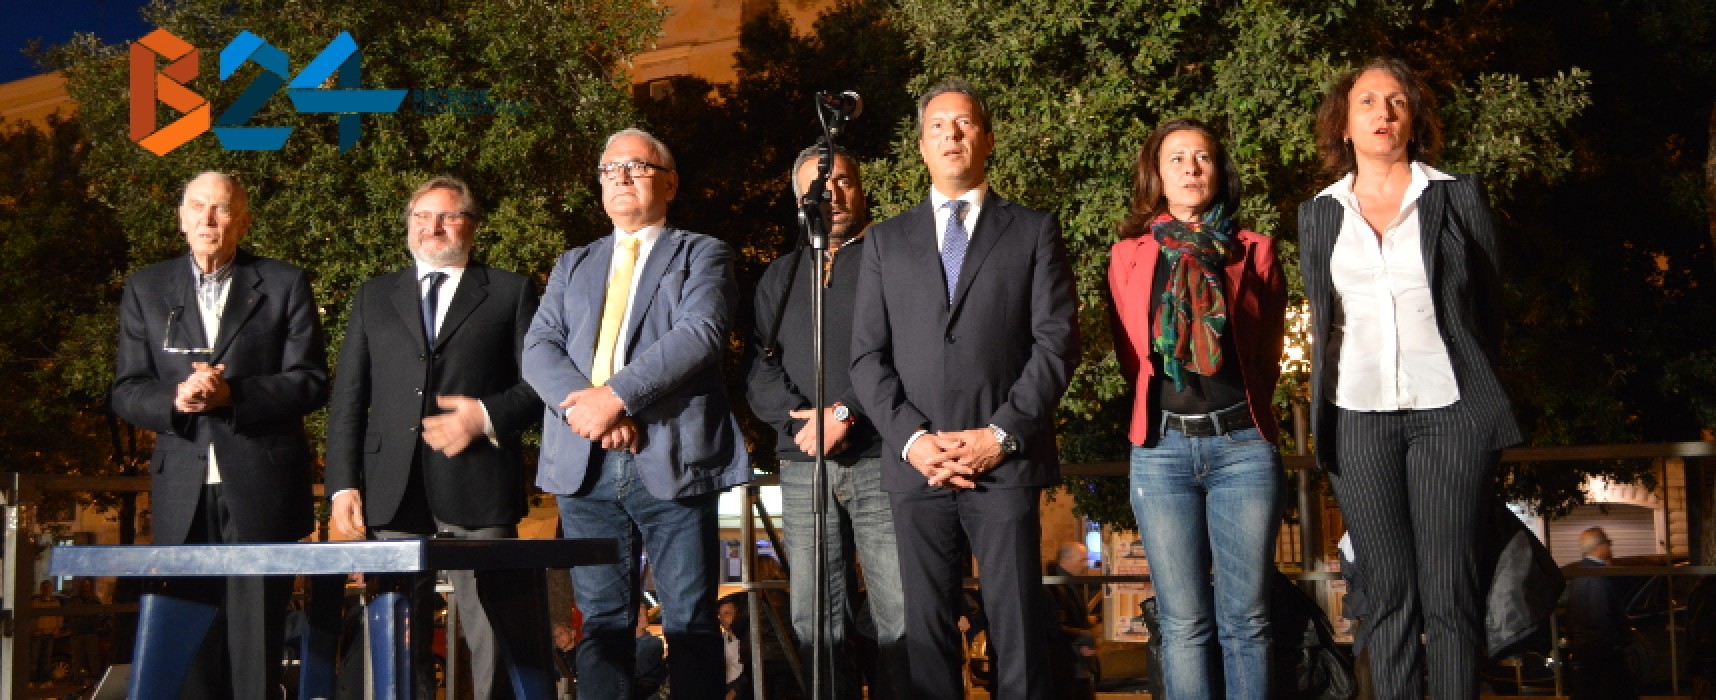 Spina ha presentato i suoi candidati in piazza: «Noi coerenti a differenza degli altri» / FOTO